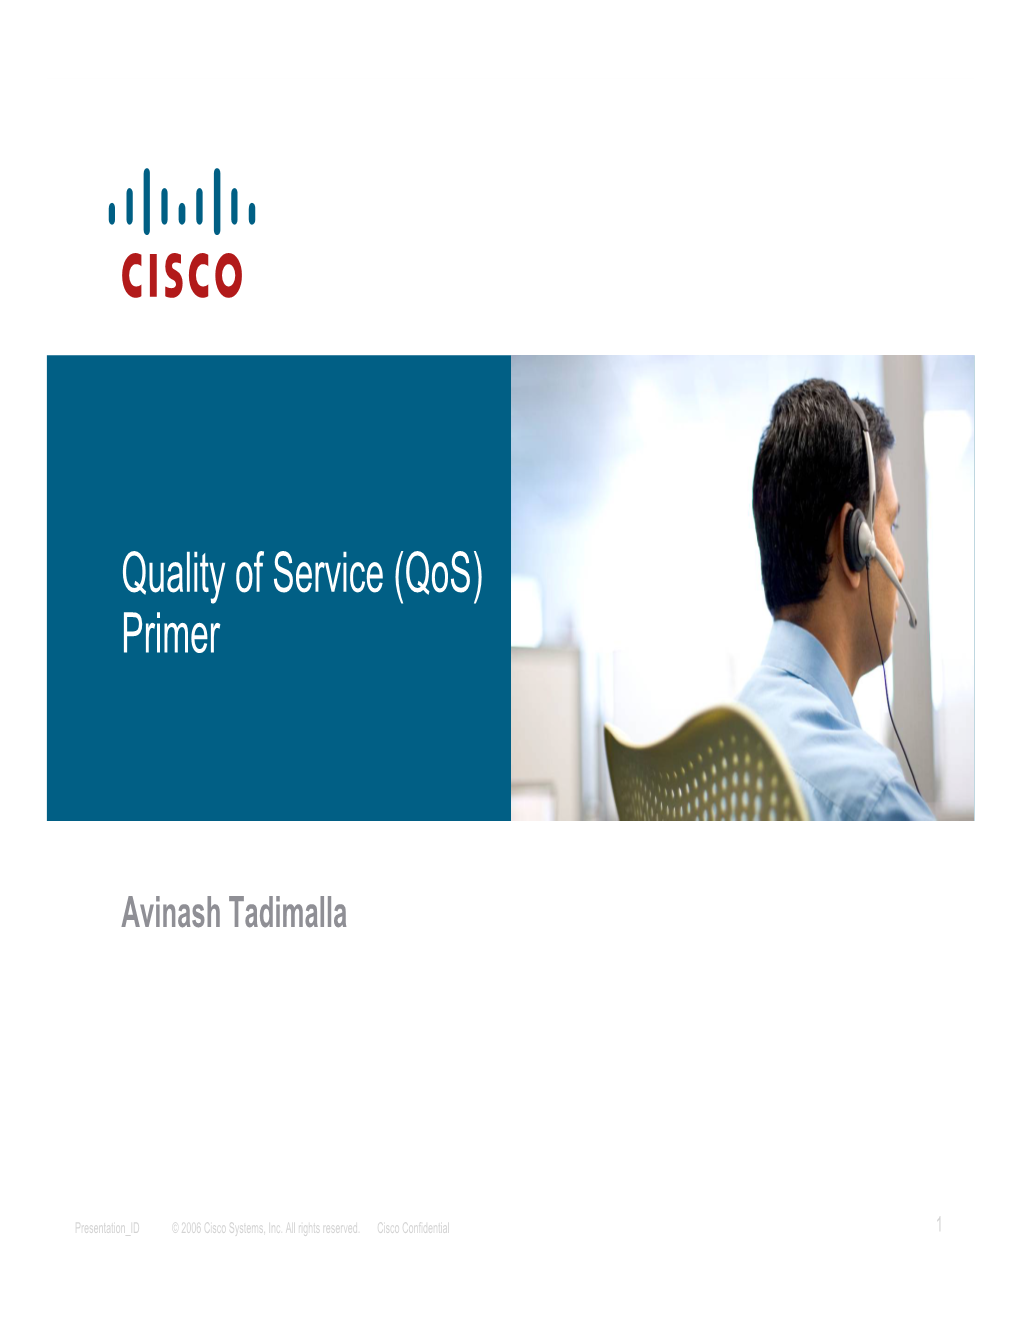 Quality of Service (Qos) Primer